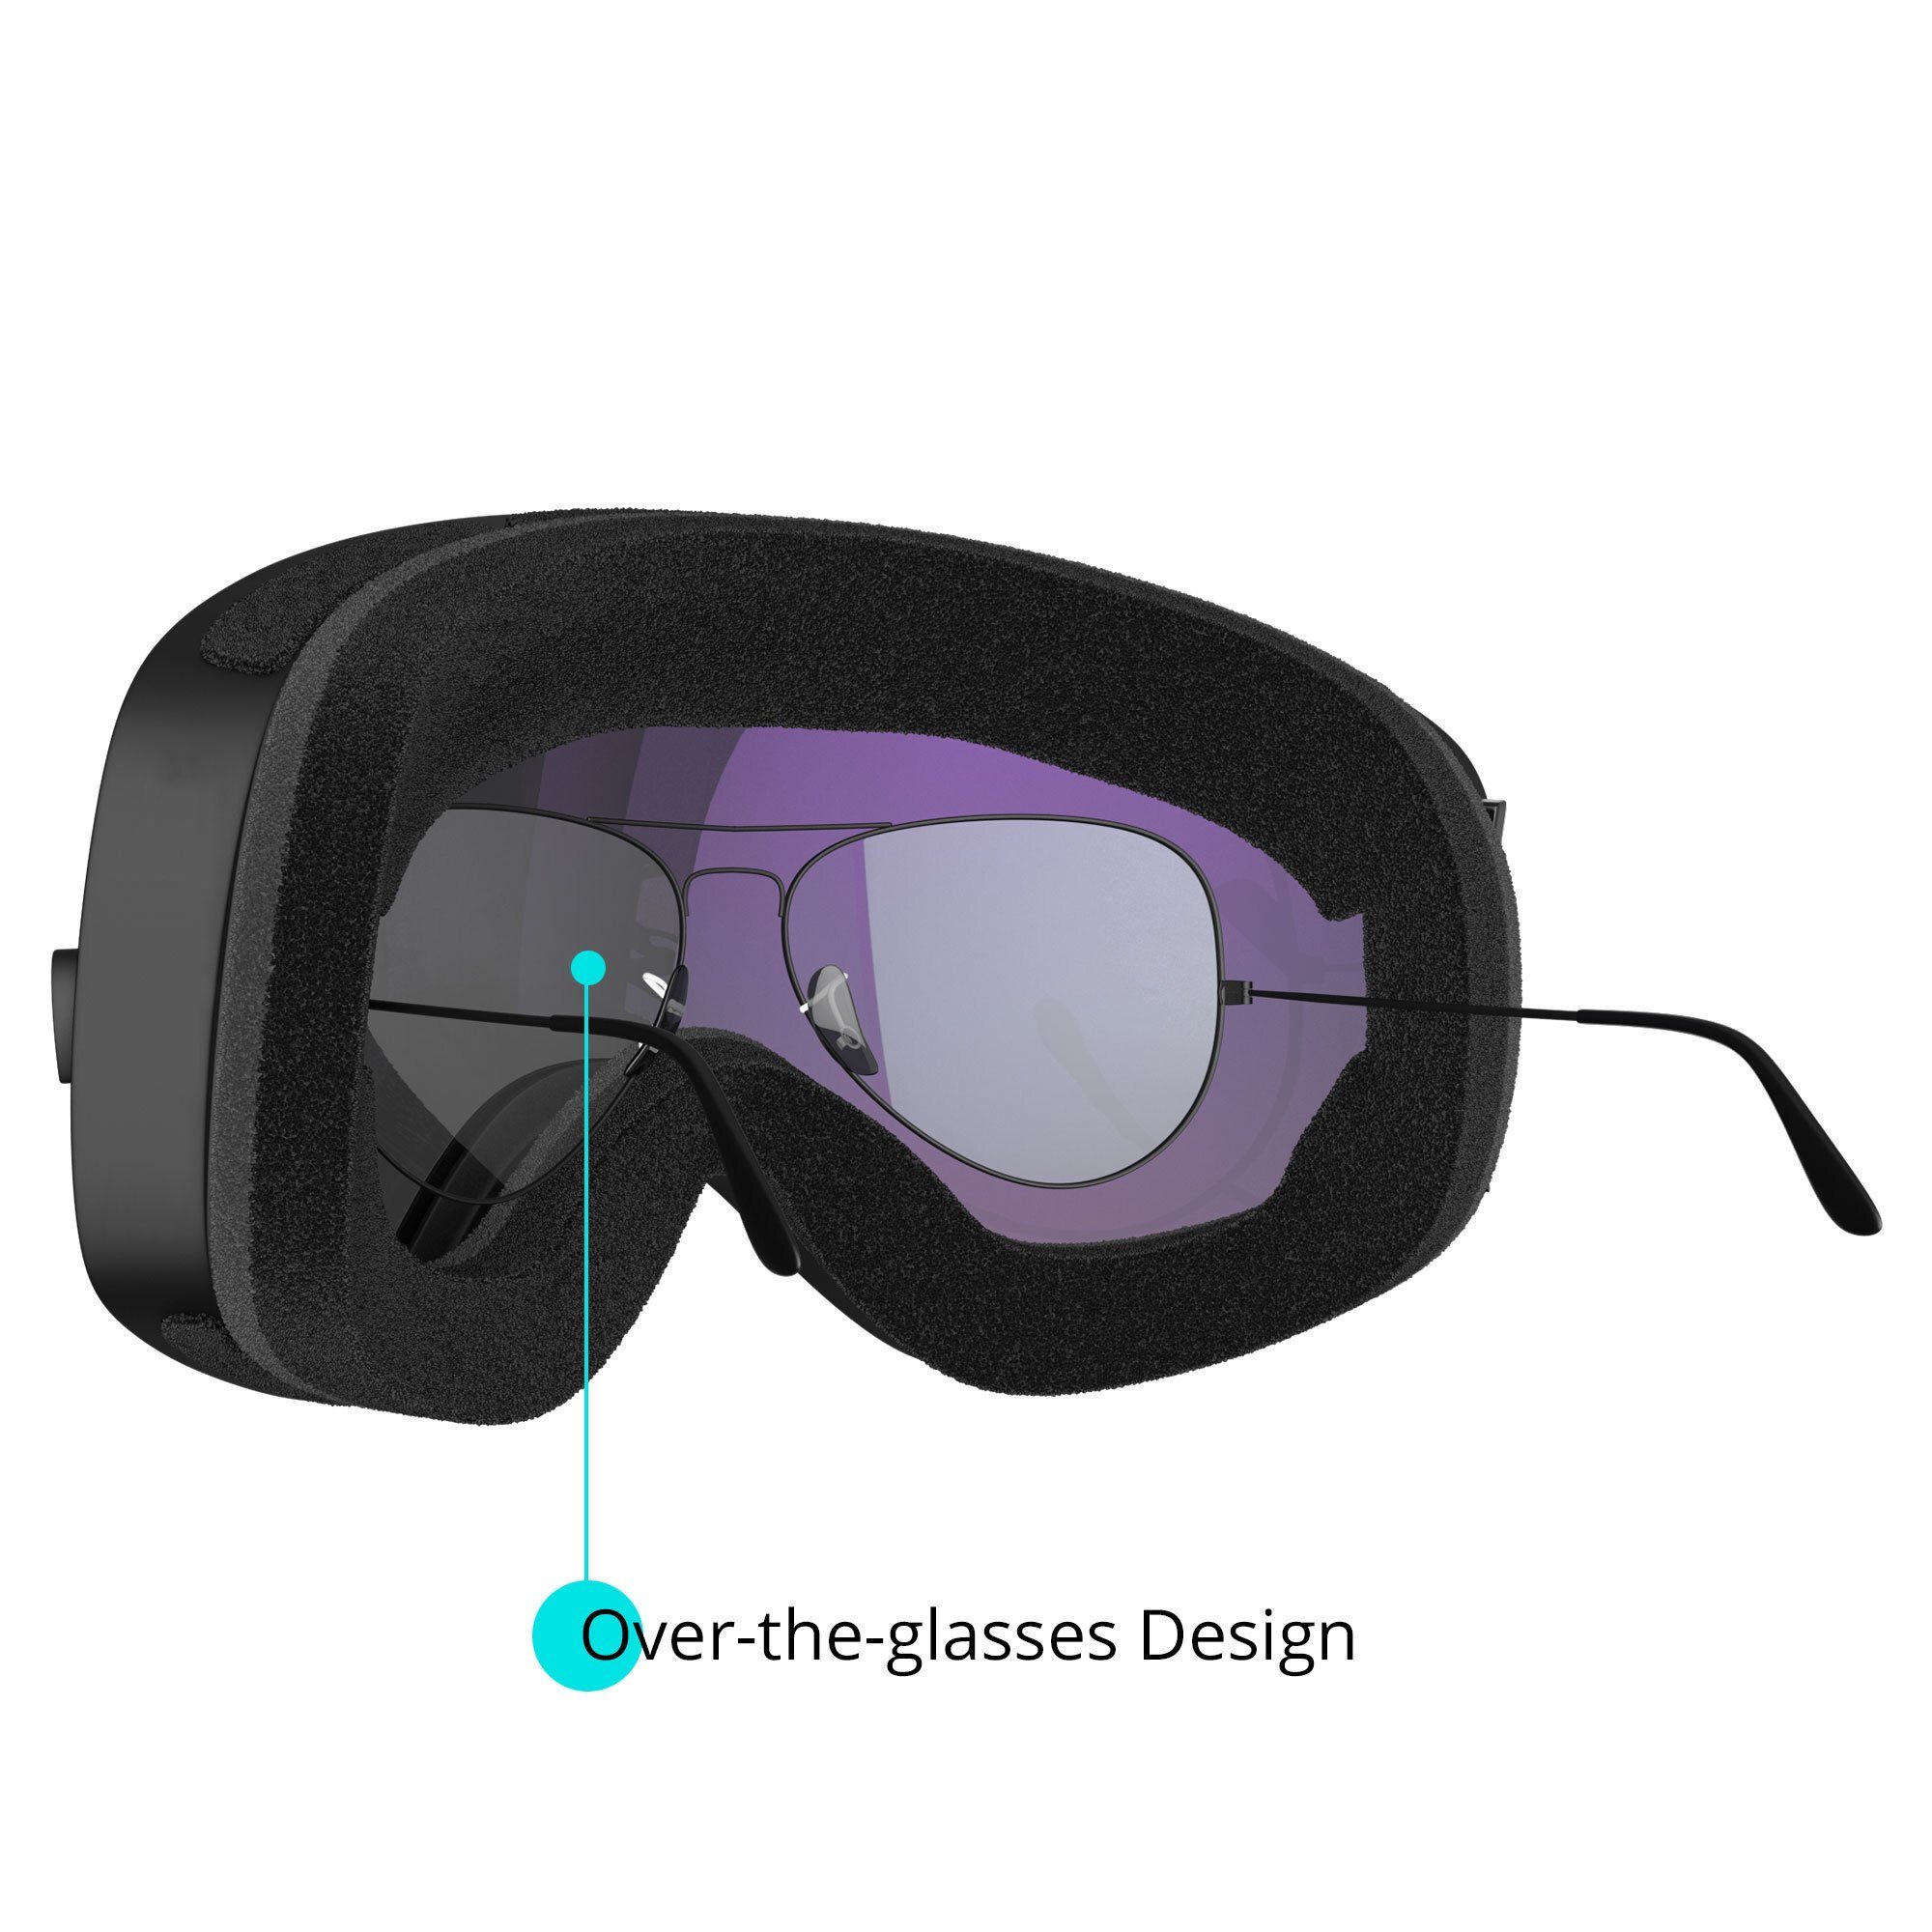 YEAZ Magnet-Wechsel-System für Skibrille silber/silber Gläser, APEX,